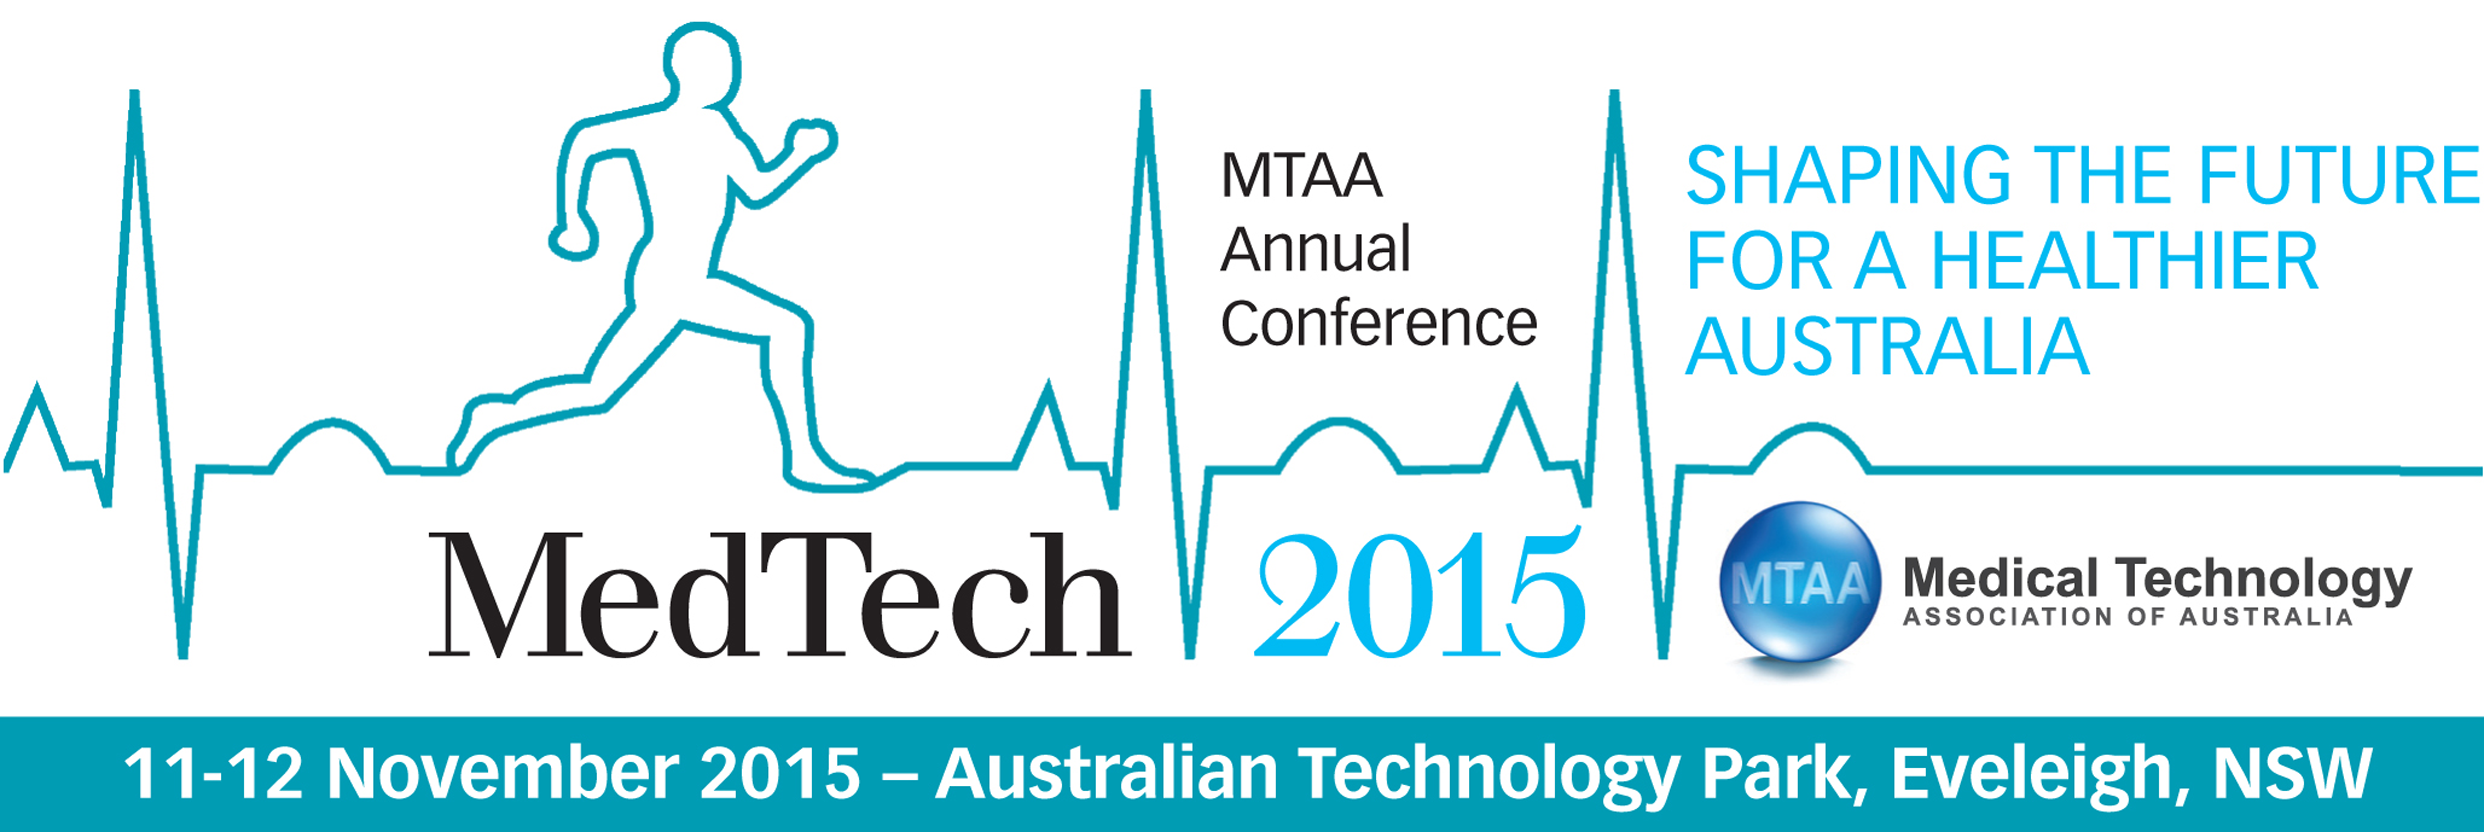 Talking Social Media & Clinical Trials at MedTech 2015!